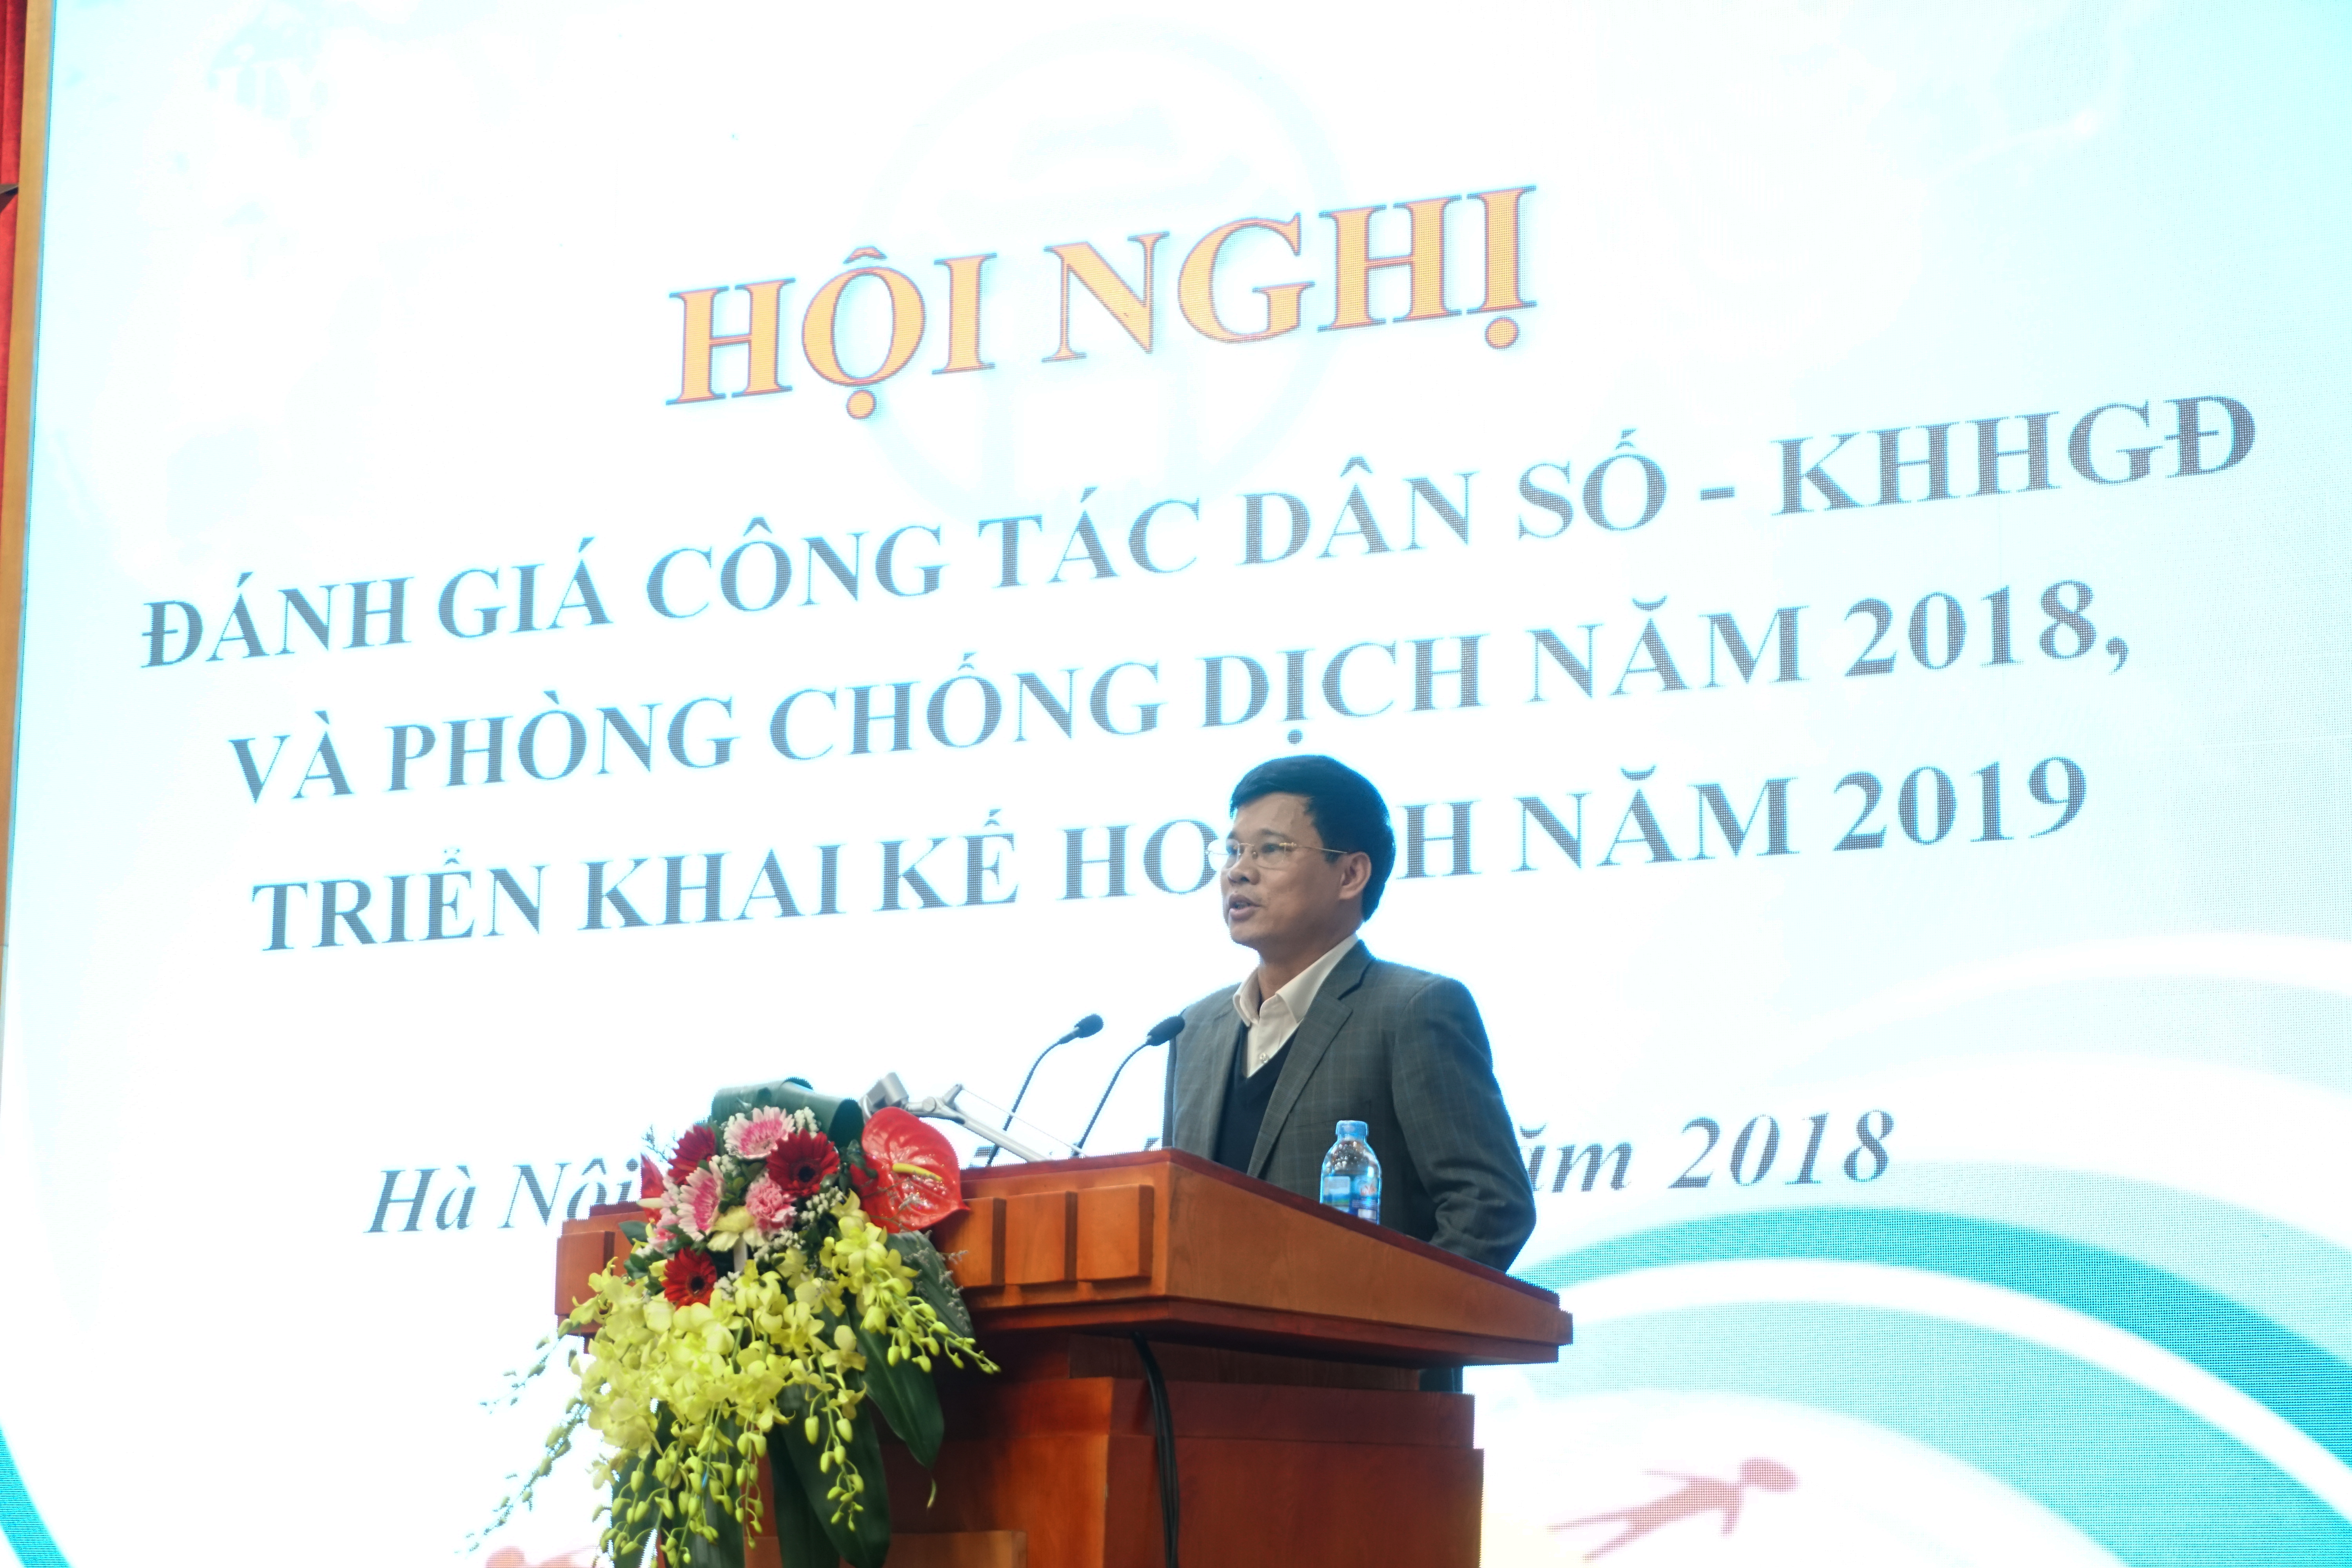 Hà Nội đánh giá công tác dân số – kế hoạch hóa gia đình năm 2018, triển khai kế hoạch năm 2019